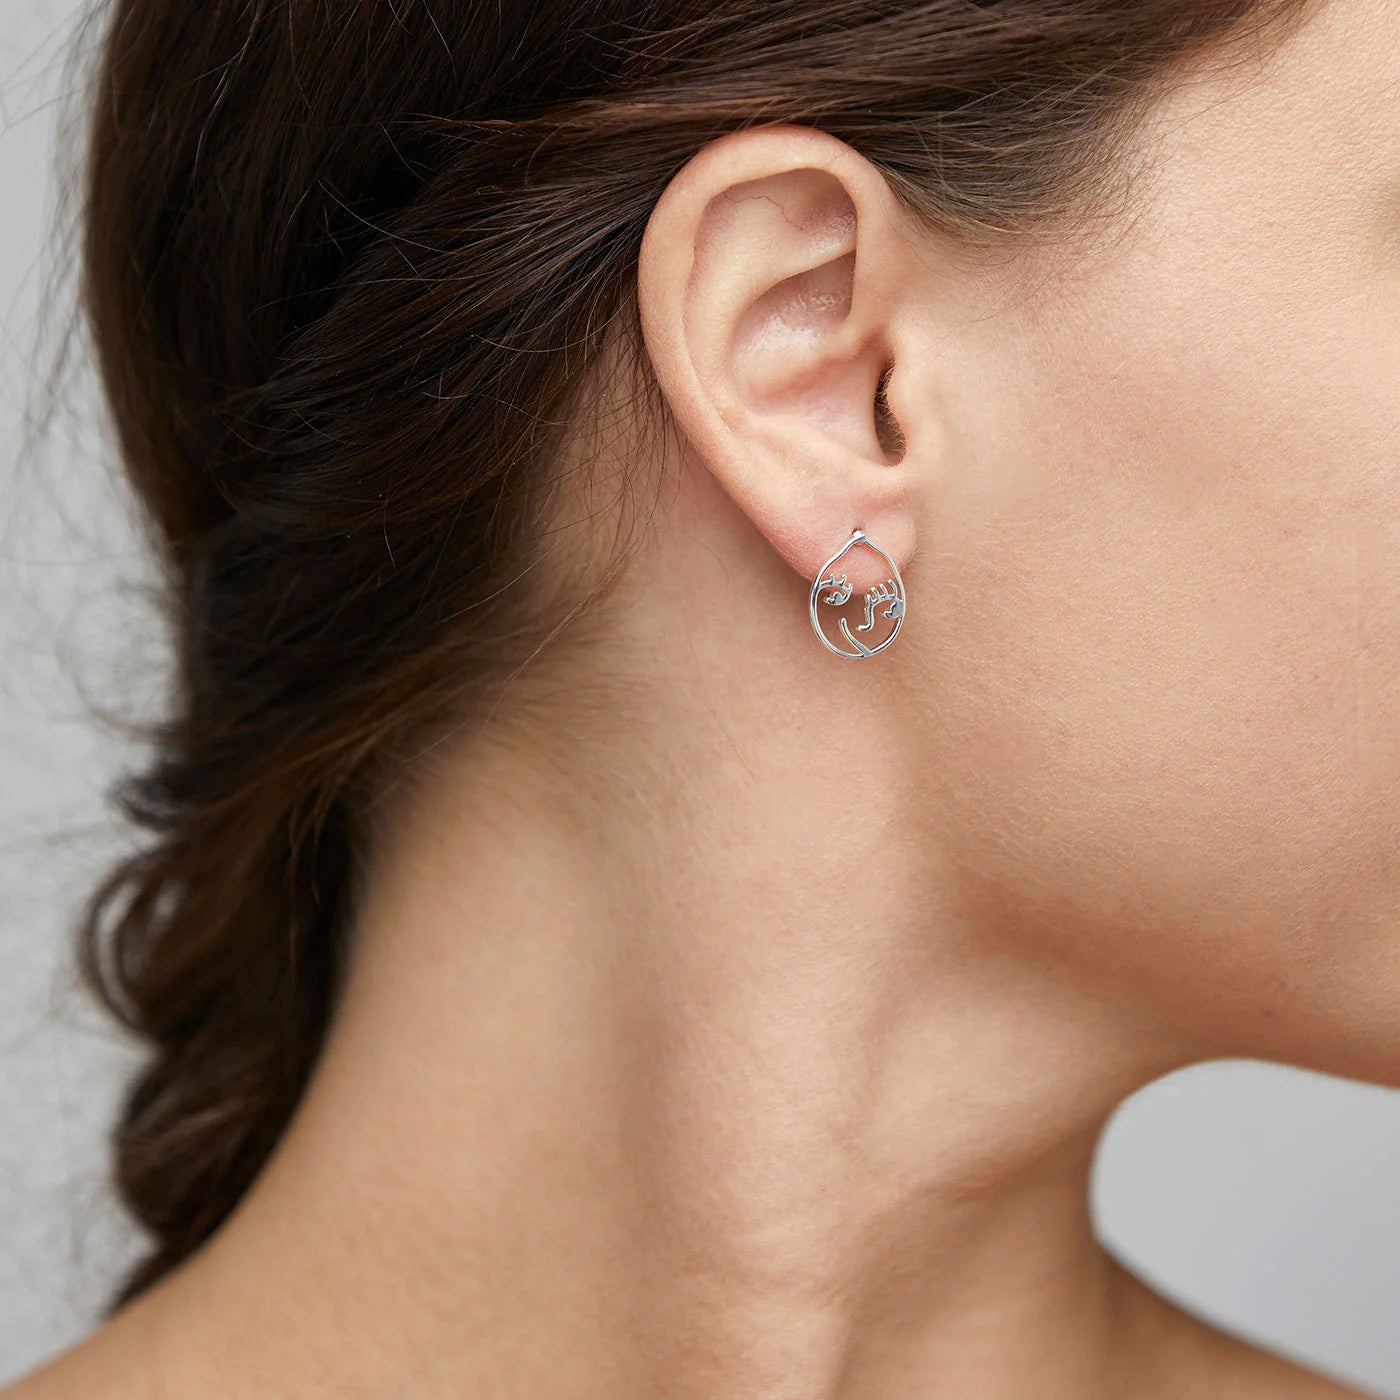 DEBRA earrings silver-plated